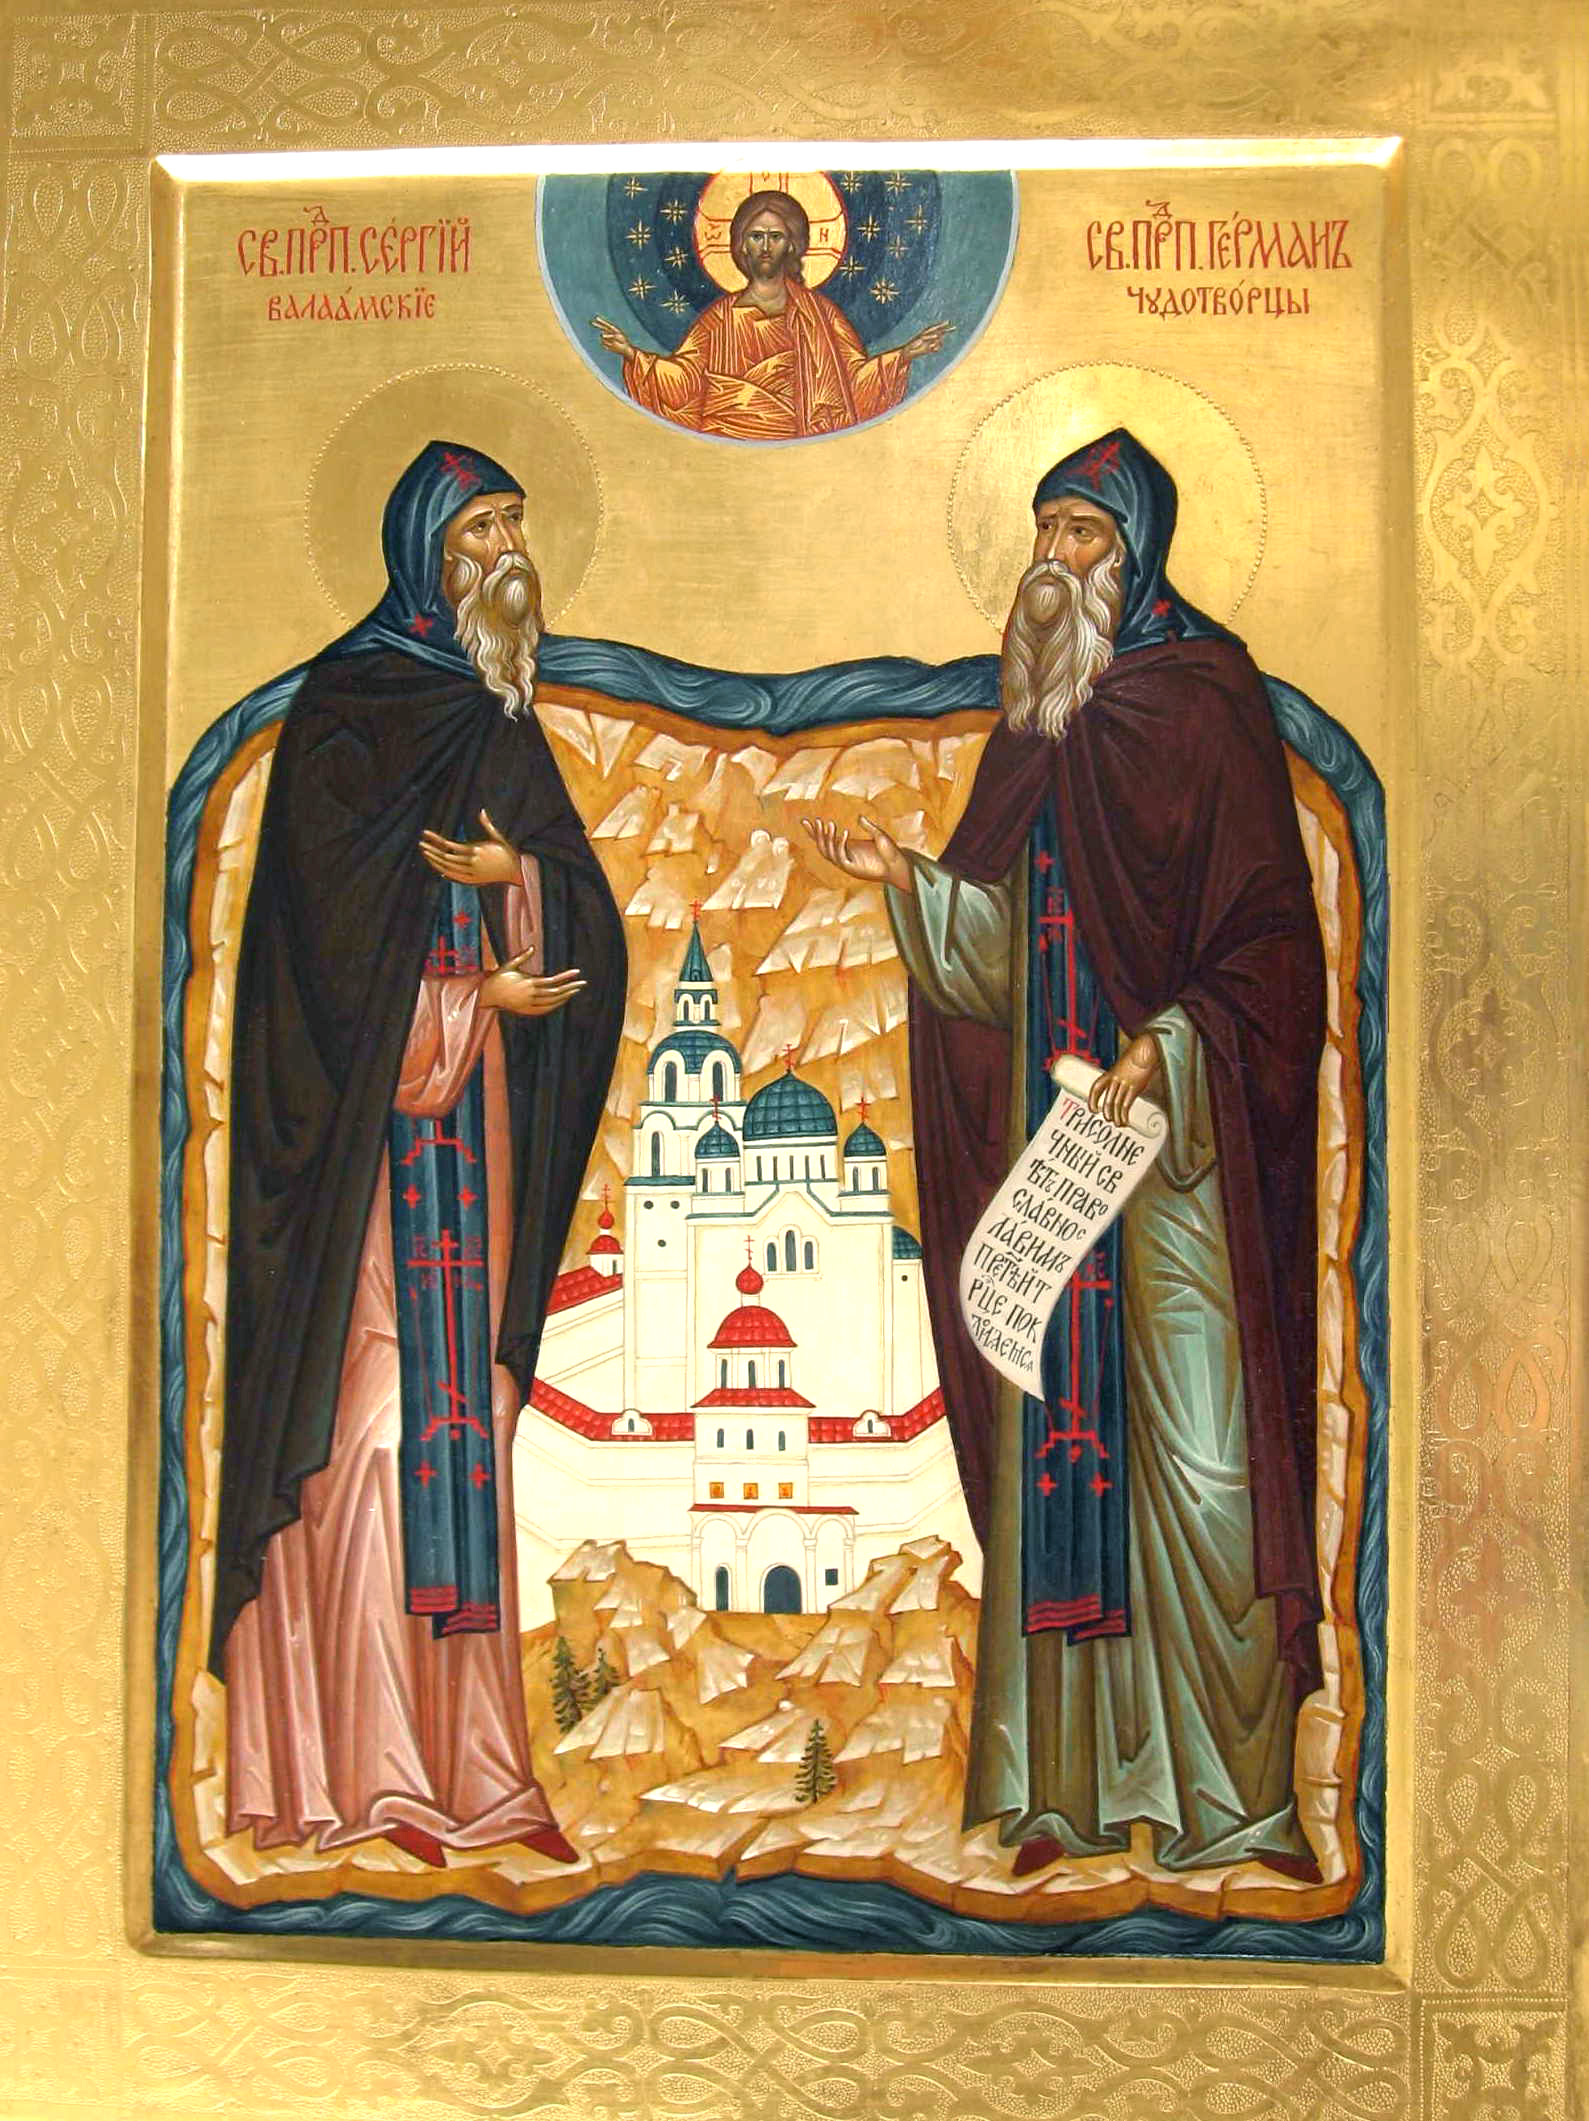 воскресенье 11-го июля 2021 — преподобных Сергия и Германа валаамских чудотворцев